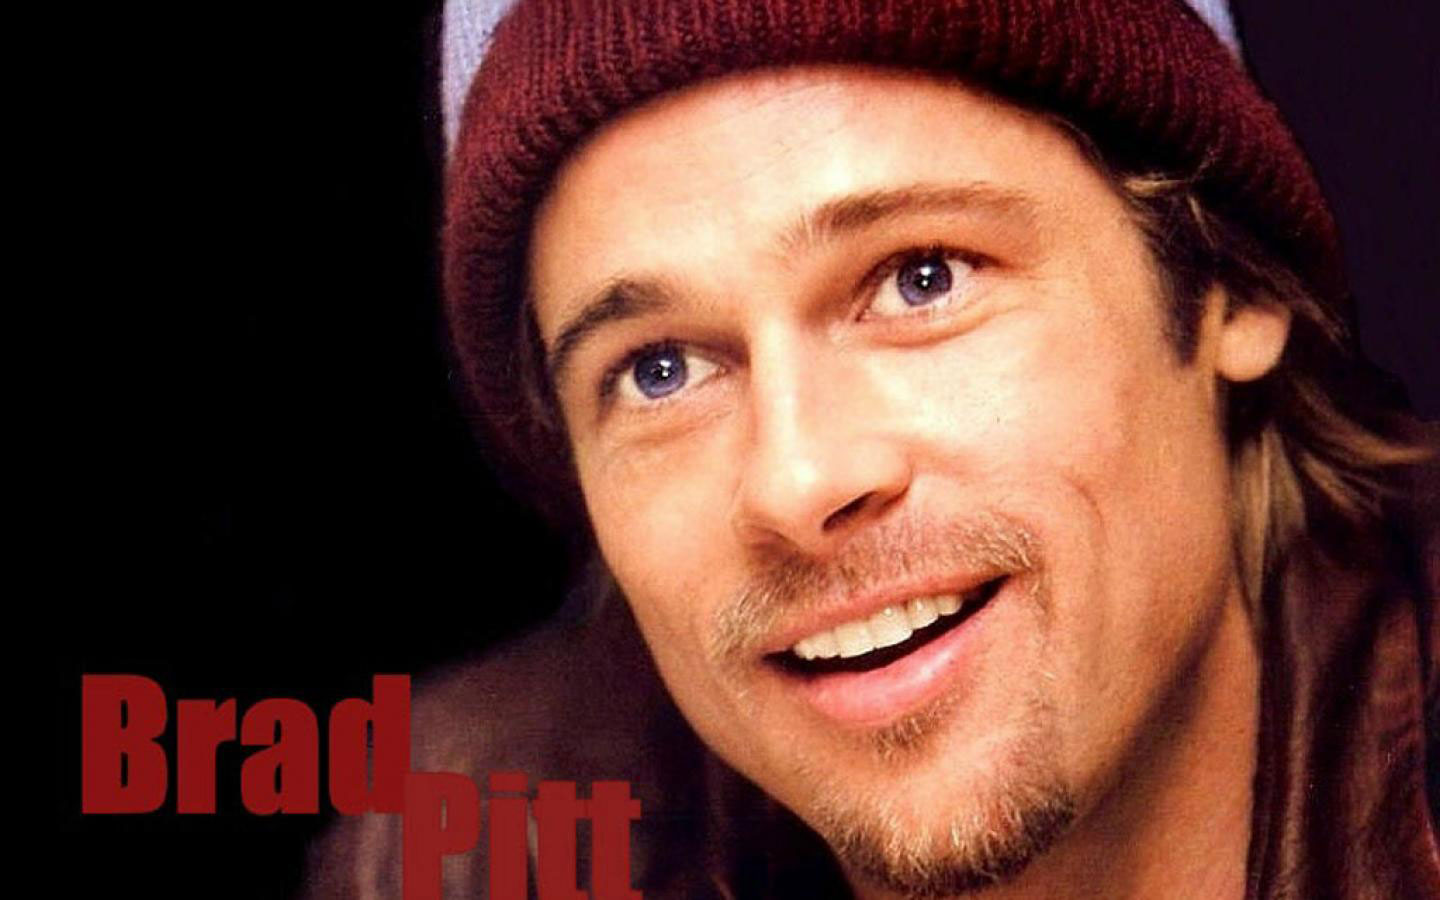 Descarga gratuita de fondo de pantalla para móvil de Brad Pitt, Celebridades.